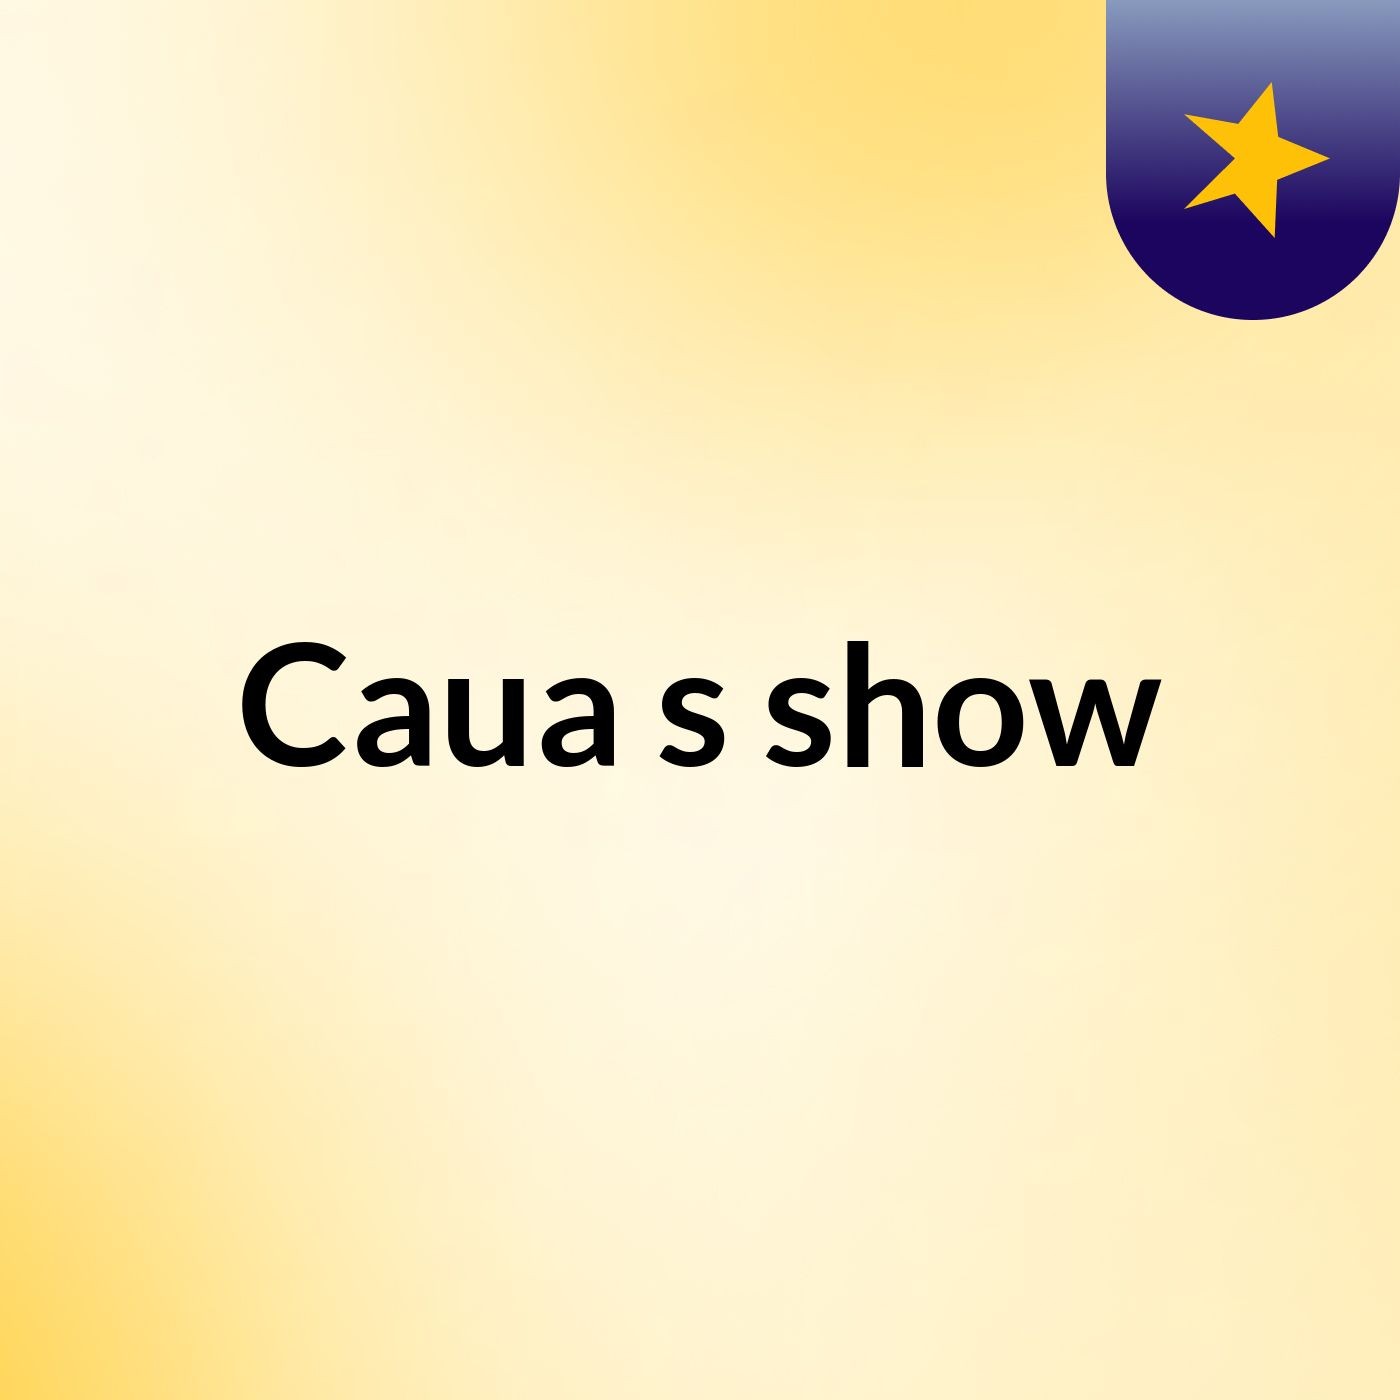 Caua's show